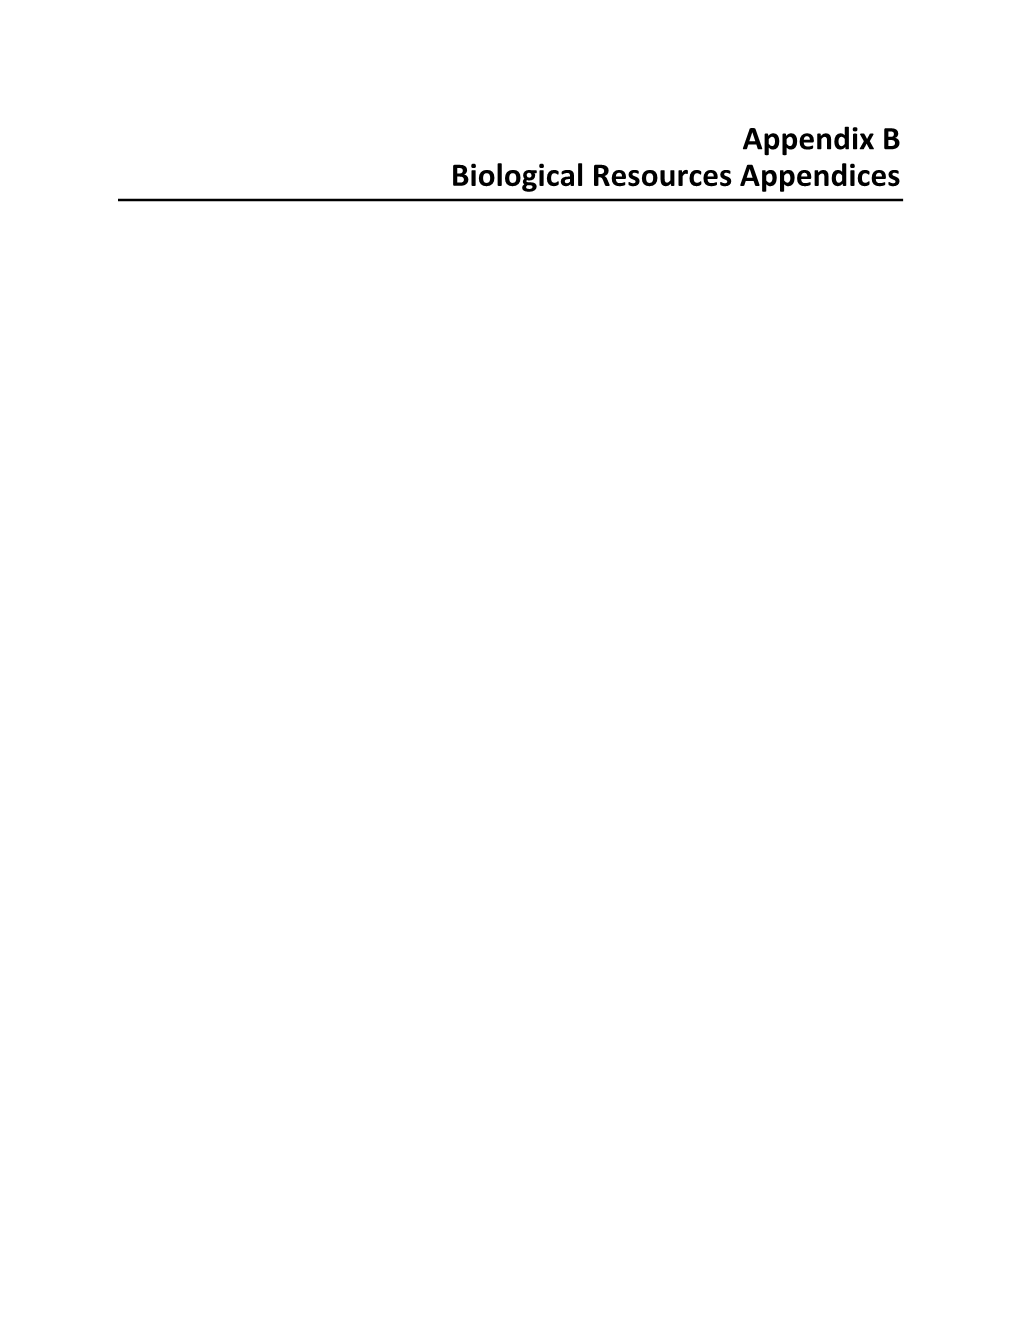 Appendix B Biological Resources Appendices